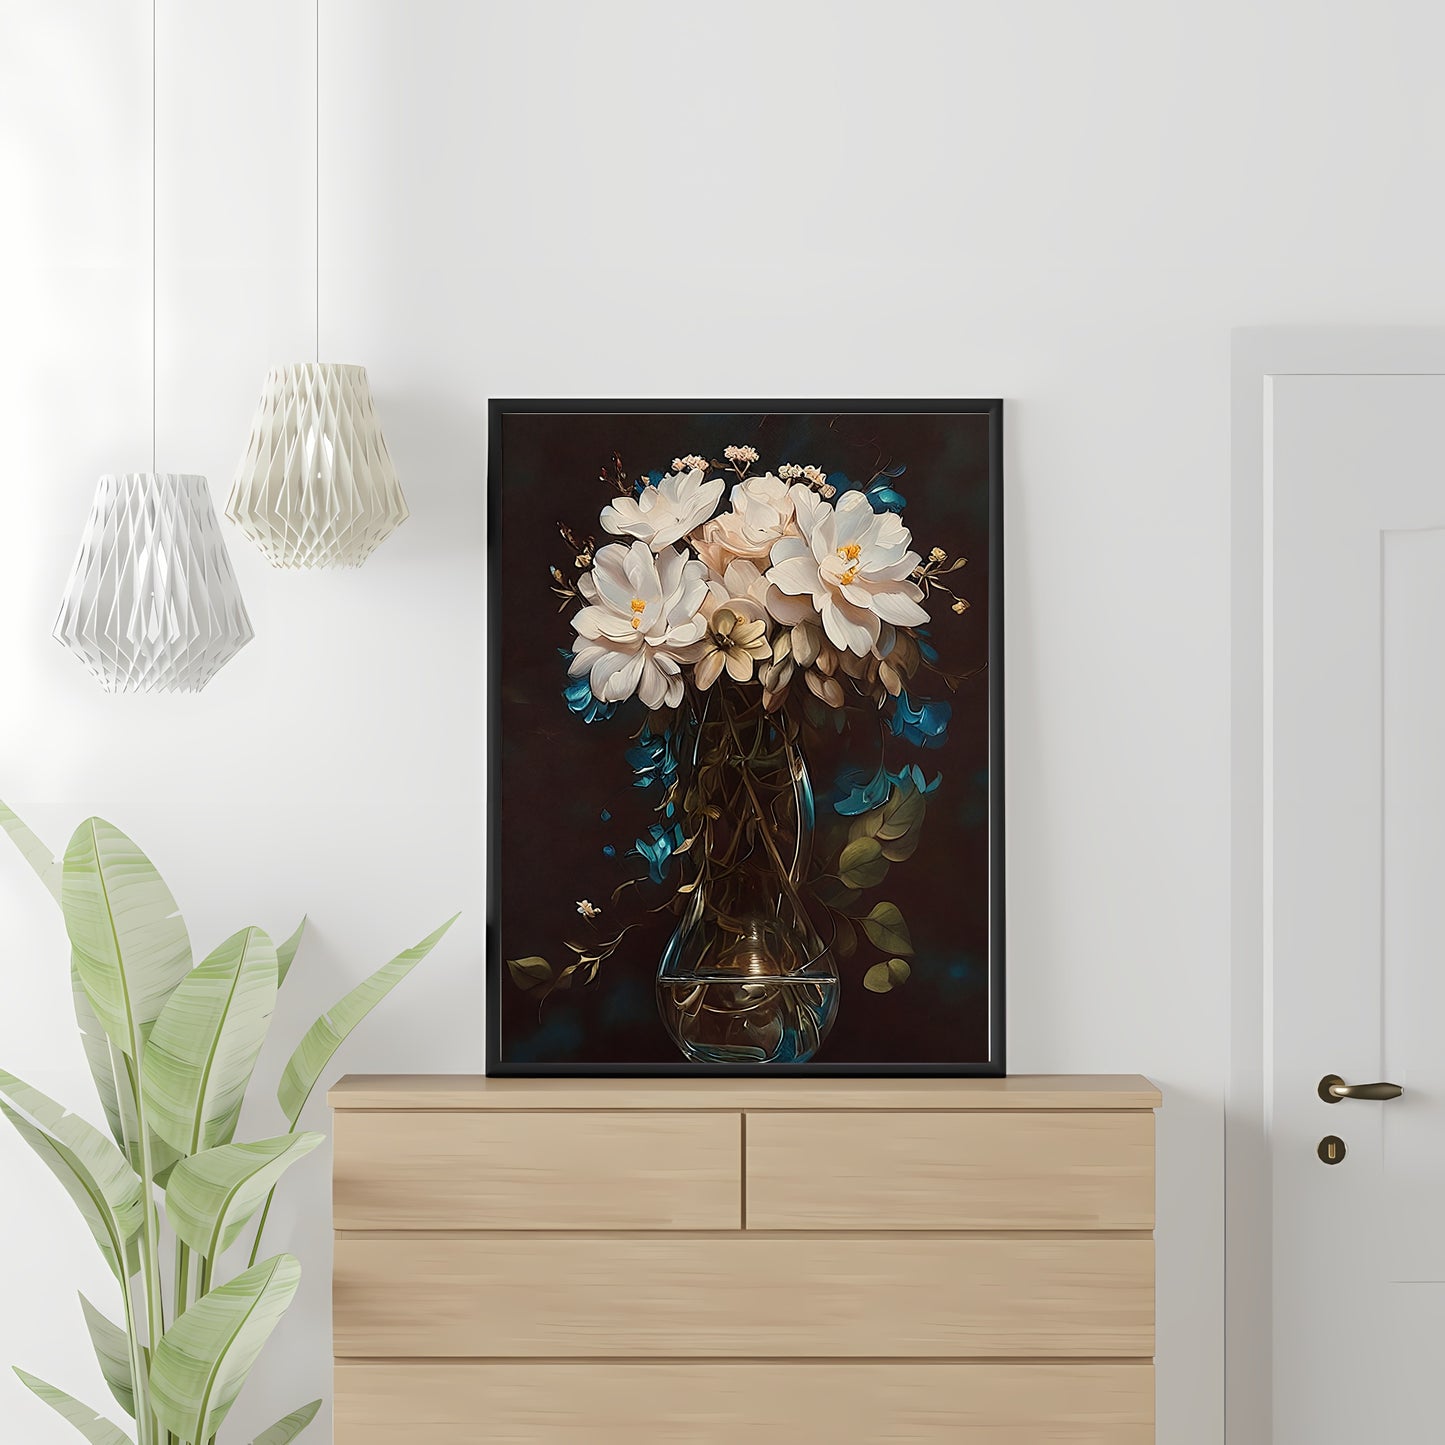 Blühende Blumen in einer Glasvase auf dem Tisch, Stillleben-Gemälde, Papier-Poster, Drucke, Vintage-Kunst, Bauernhaus-Dekor, Blumengemälde, botanische Kunst, dunkel